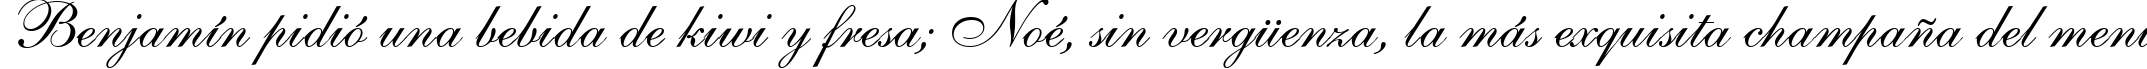 Пример написания шрифтом font139 текста на испанском